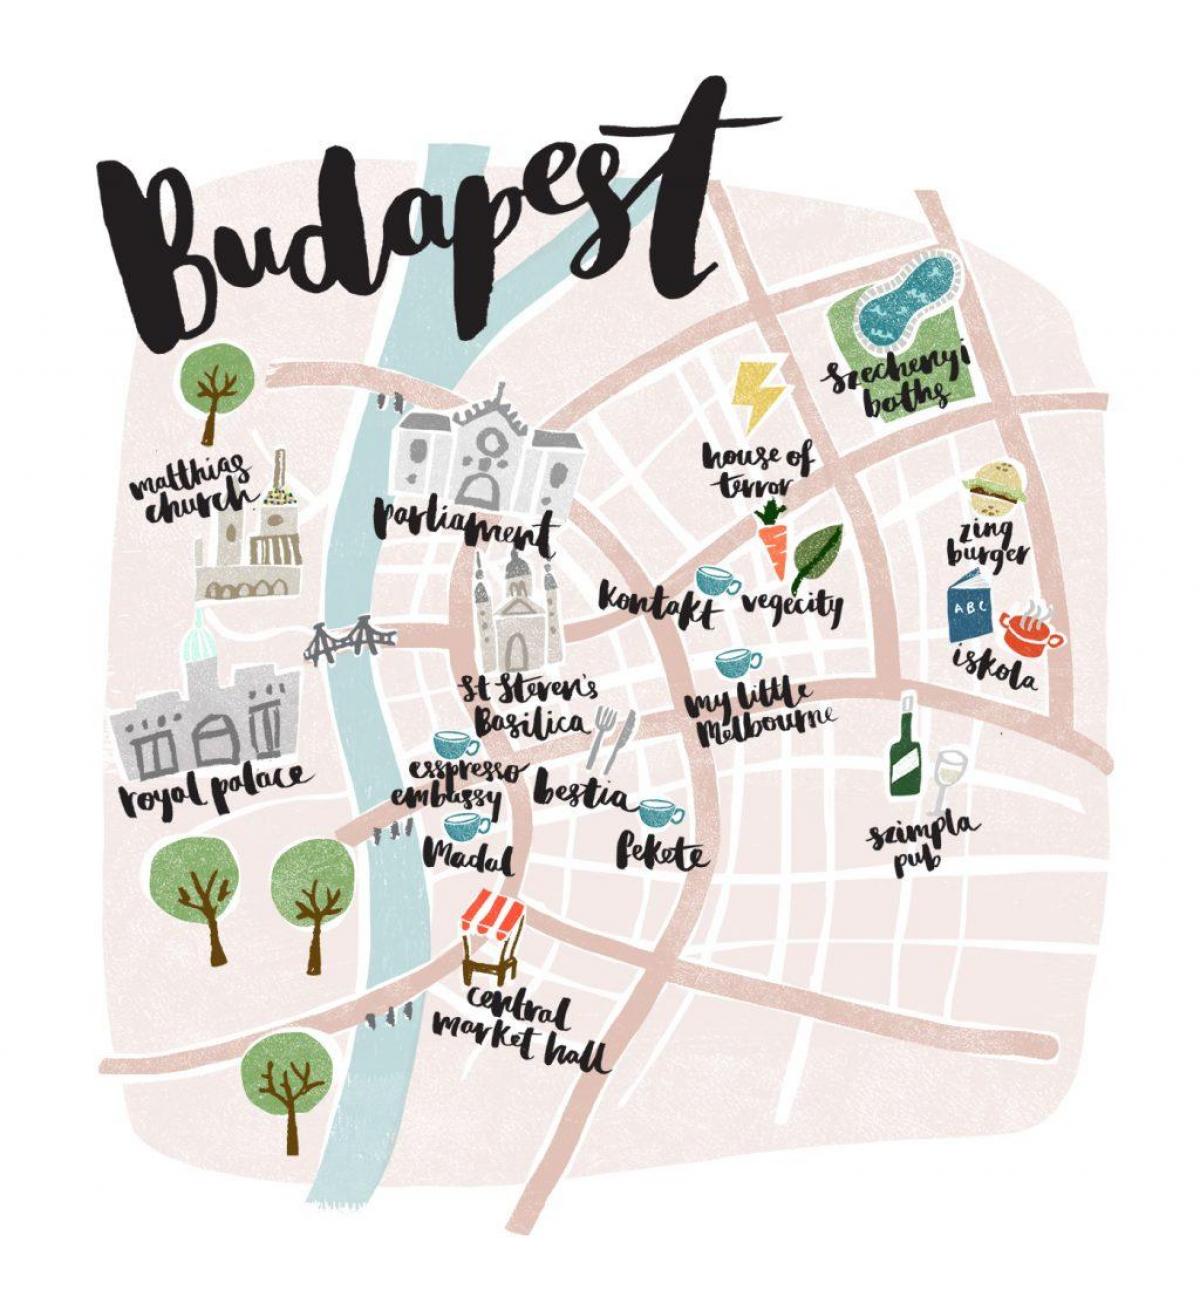 نقشه از بوداپست آفلاین